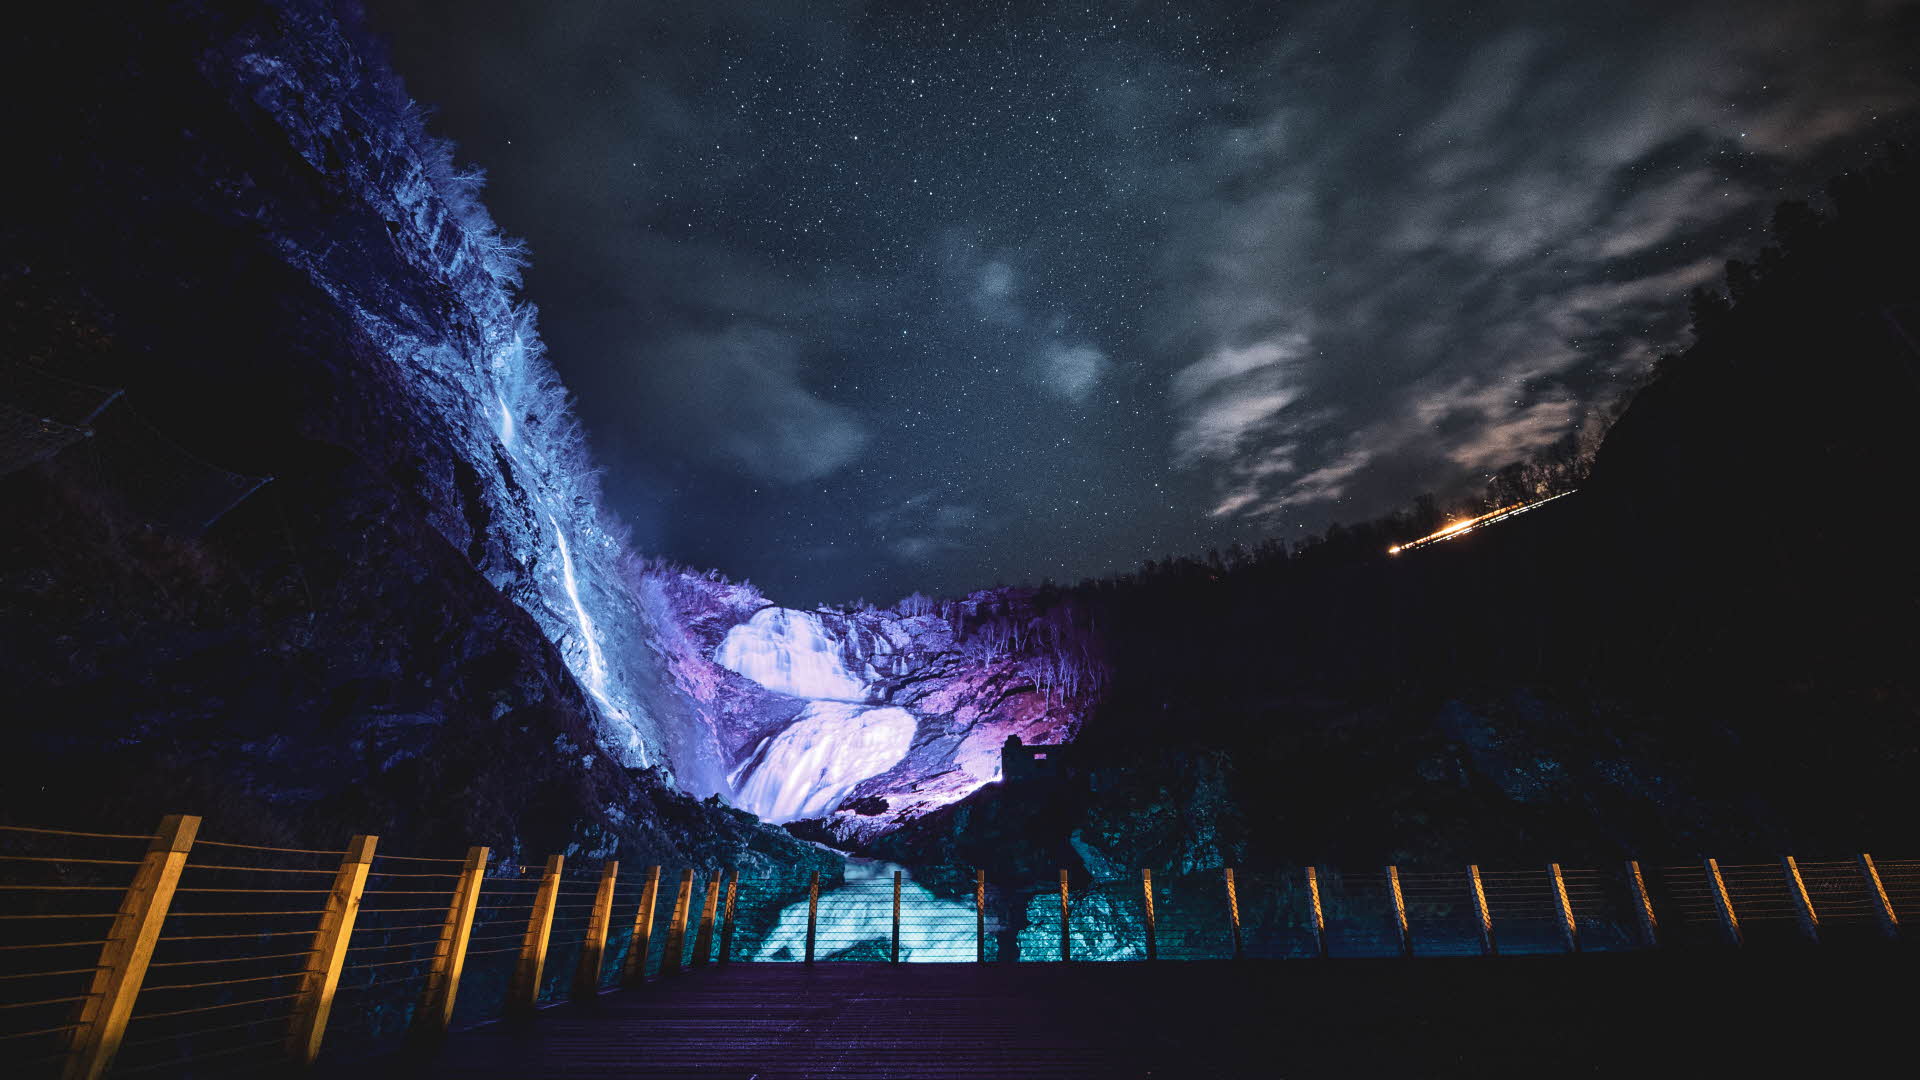 黑夜中的尤斯 (Kjosfossen) 瀑布被紫光照亮。